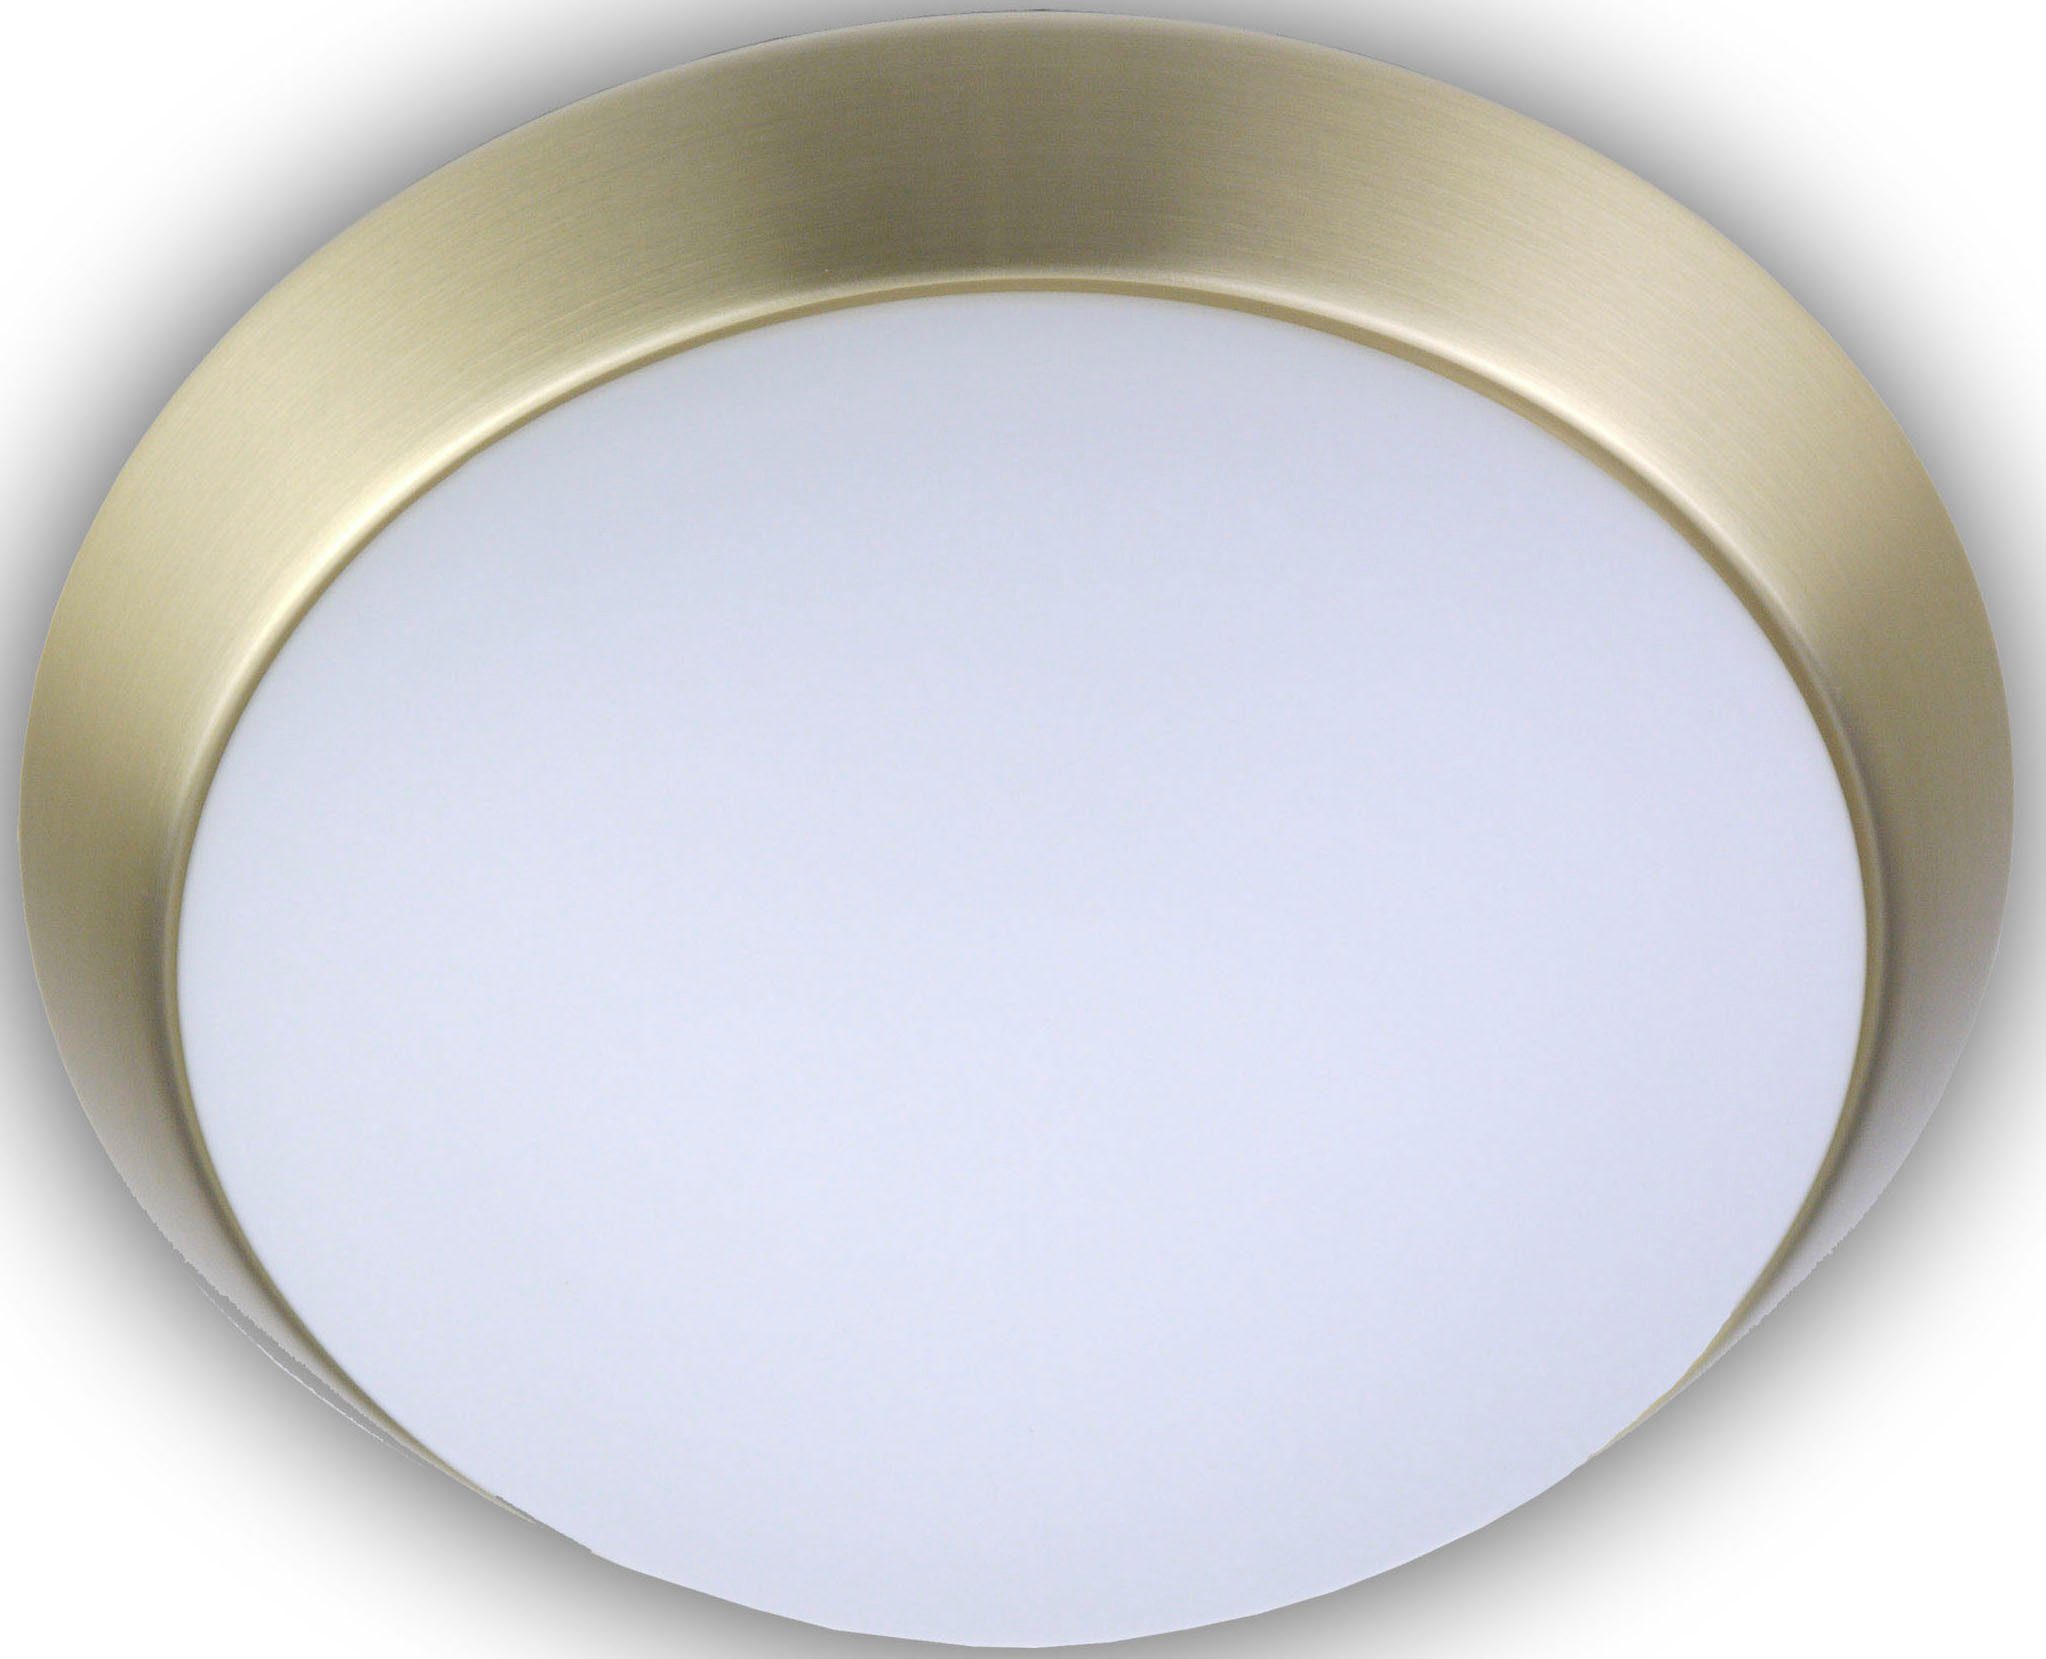 LED 40 matt, cm, matt, Messing LED, Dekorring Opal Deckenleuchte Warmweiß niermann wechselbar,